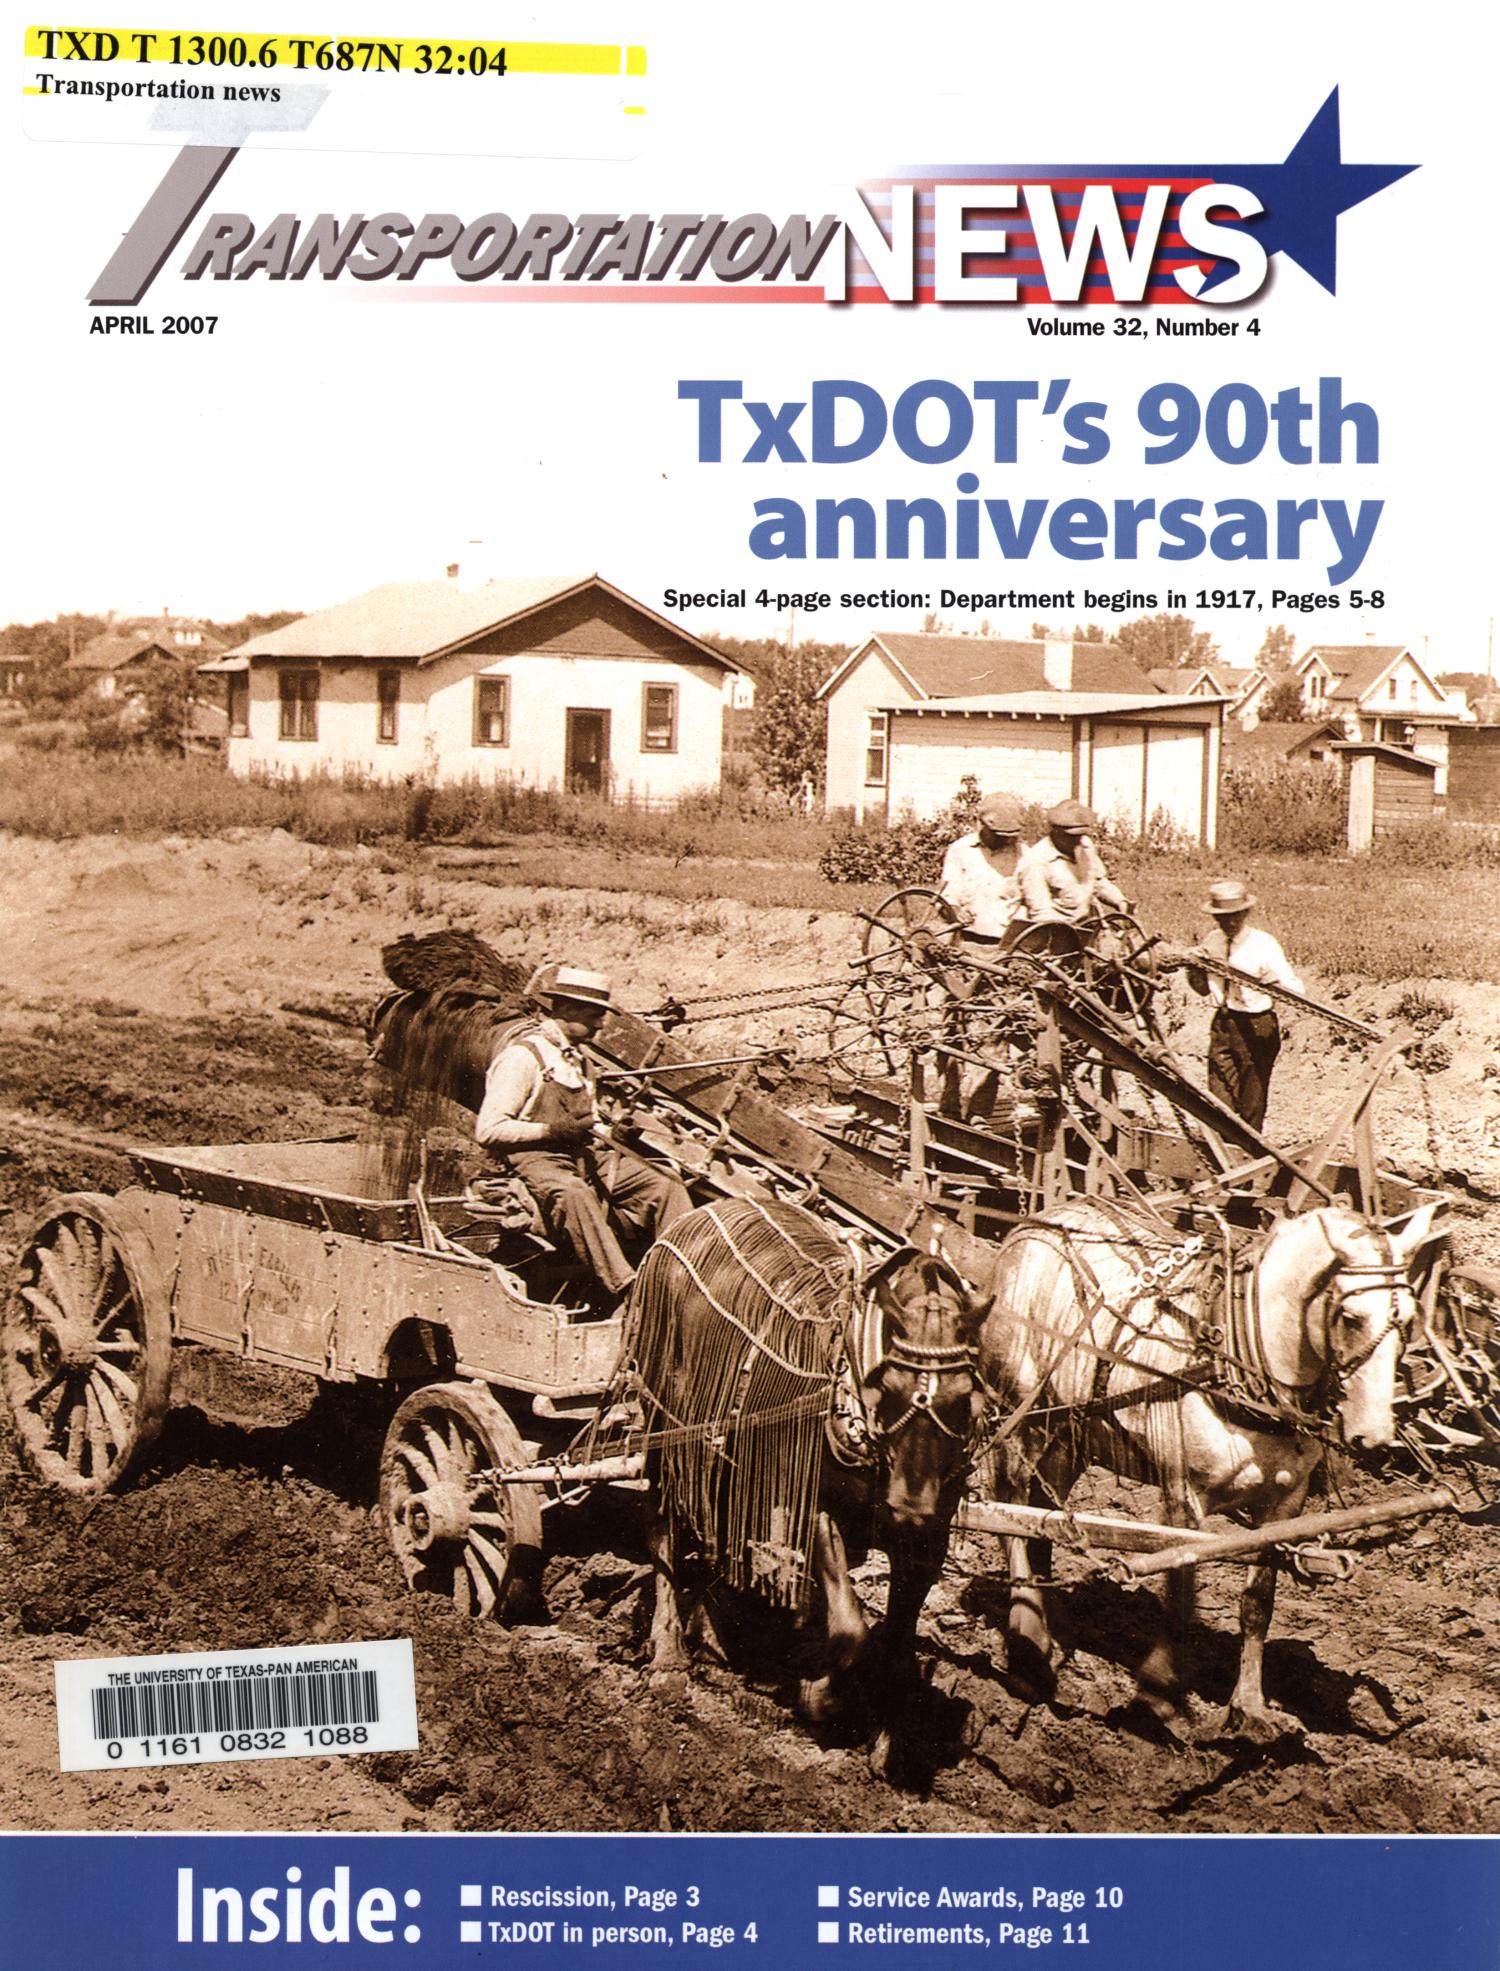 Transportation News, Volume 32, Number 4, April 2007
                                                
                                                    Title Page
                                                